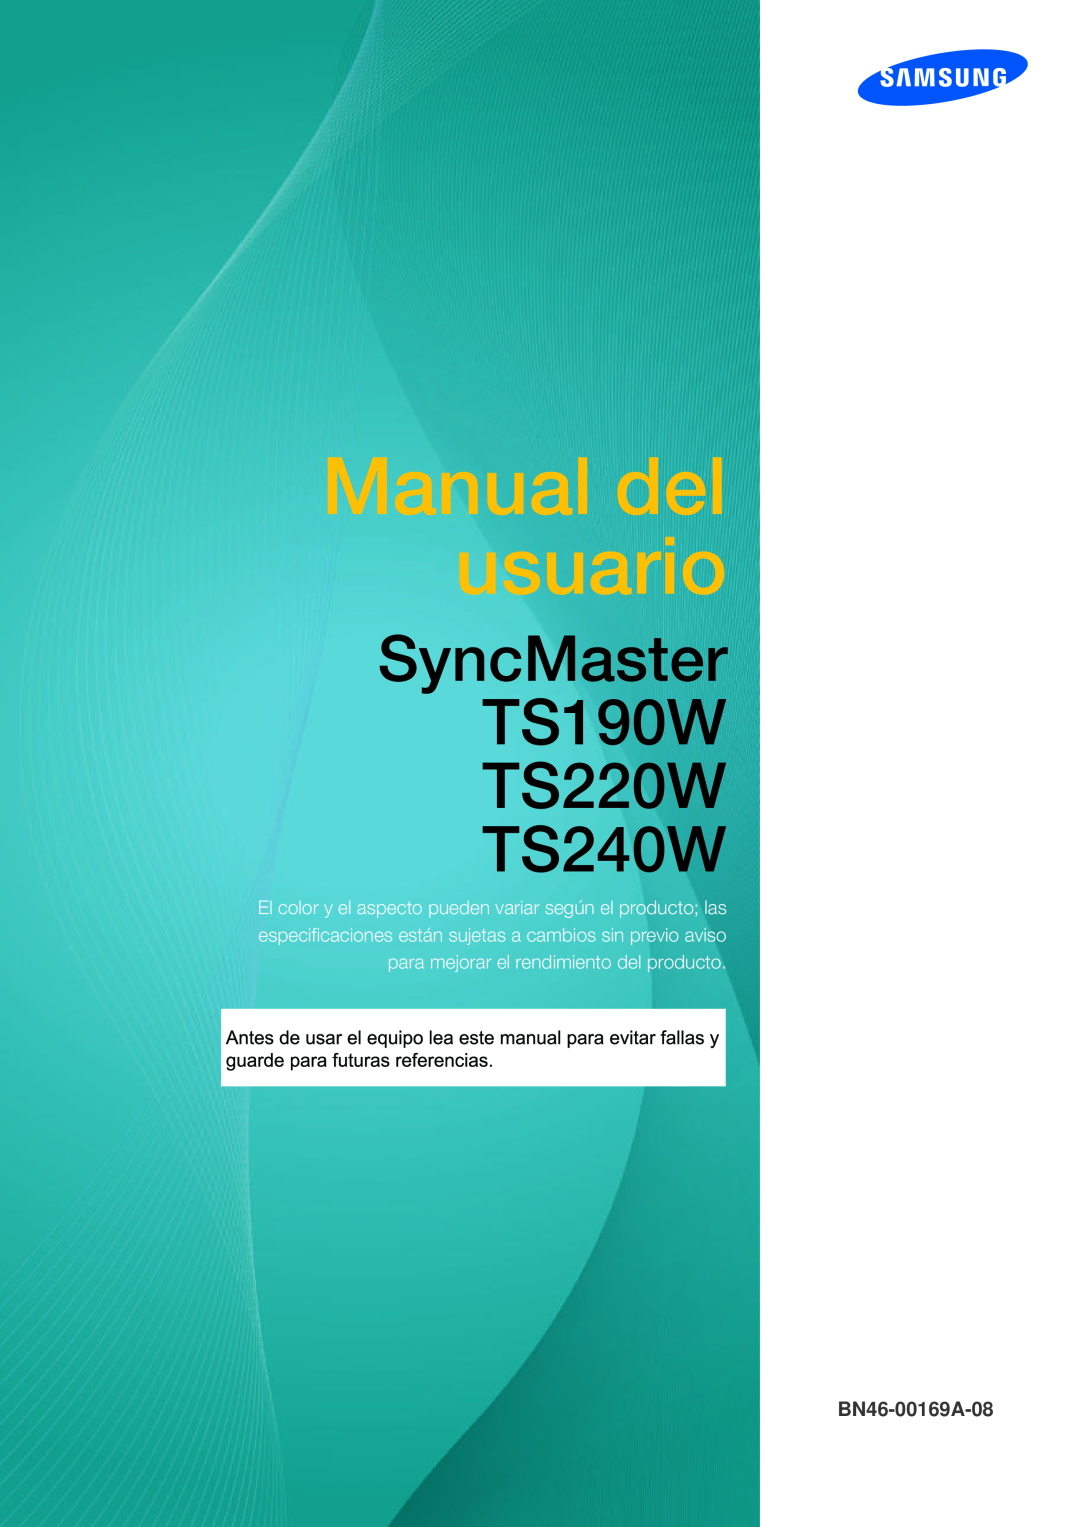 Samsung LF19TSWTBDN/EN, LF24TSWTBDN/EN manual Upute za korištenje, SyncMaster TS190W TS220W TS240W, BN46-00169A-08 